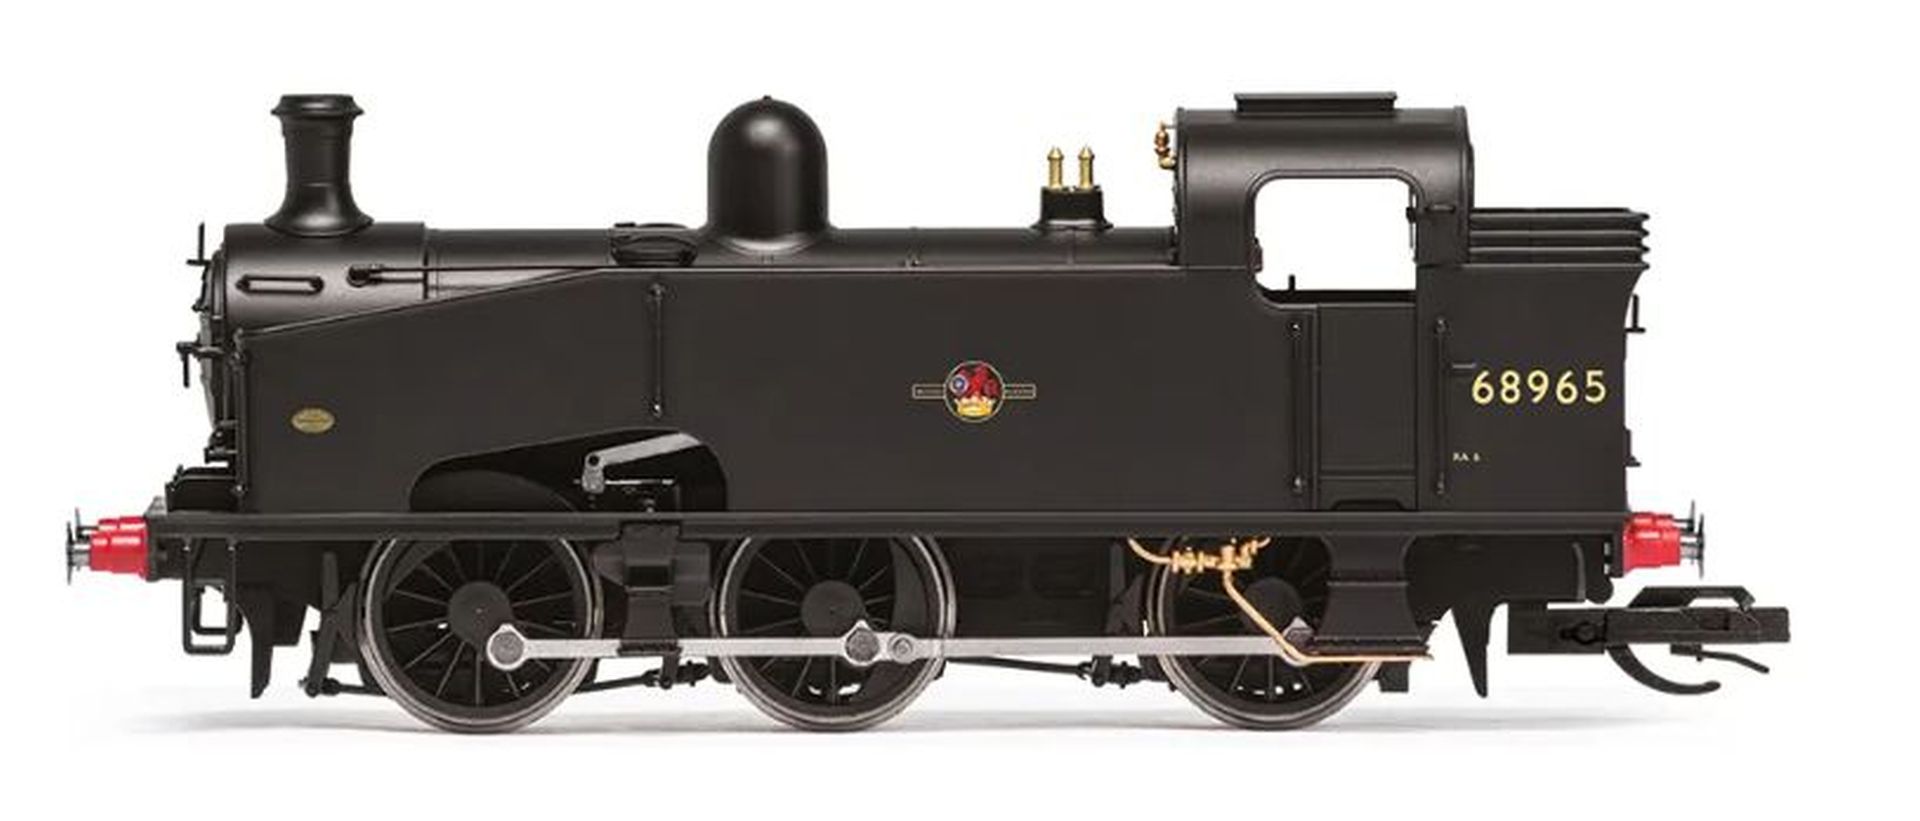 Hornby TT3026M - Dampflok BR (Late), J50 Class, 0-6-0T, 68965, Ep.III